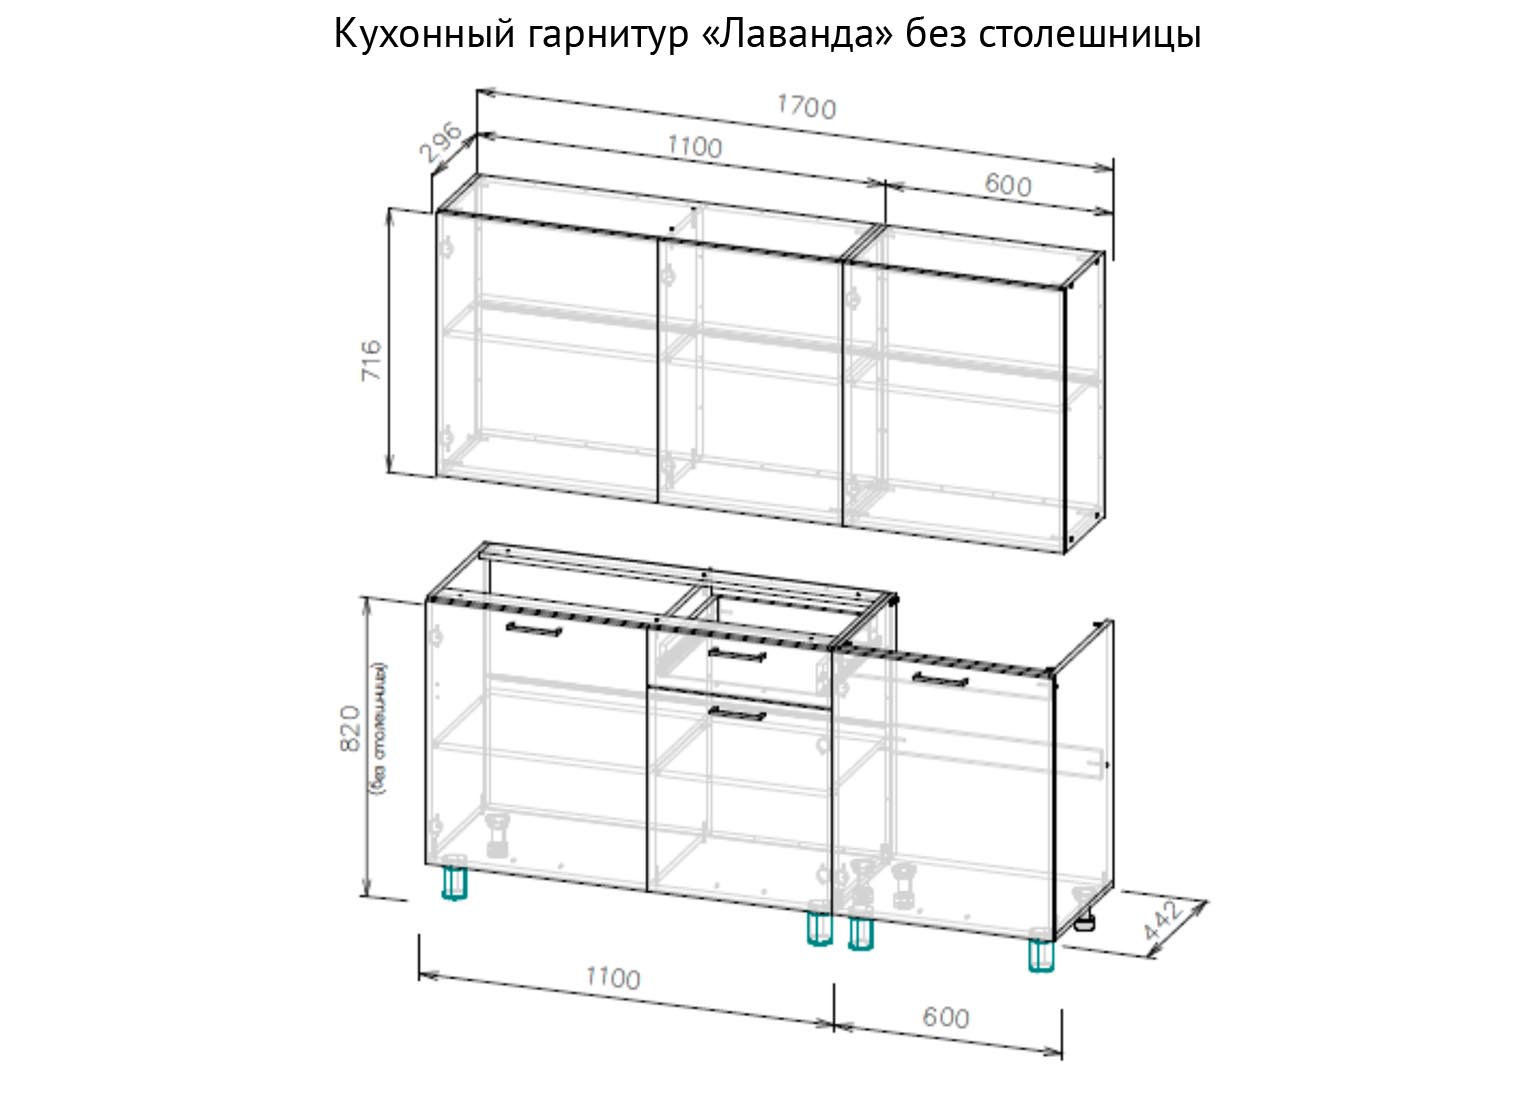 Кухня «Лаванда» Схема 1700 мм. Готовая кухня SV-Мебель Краснодар